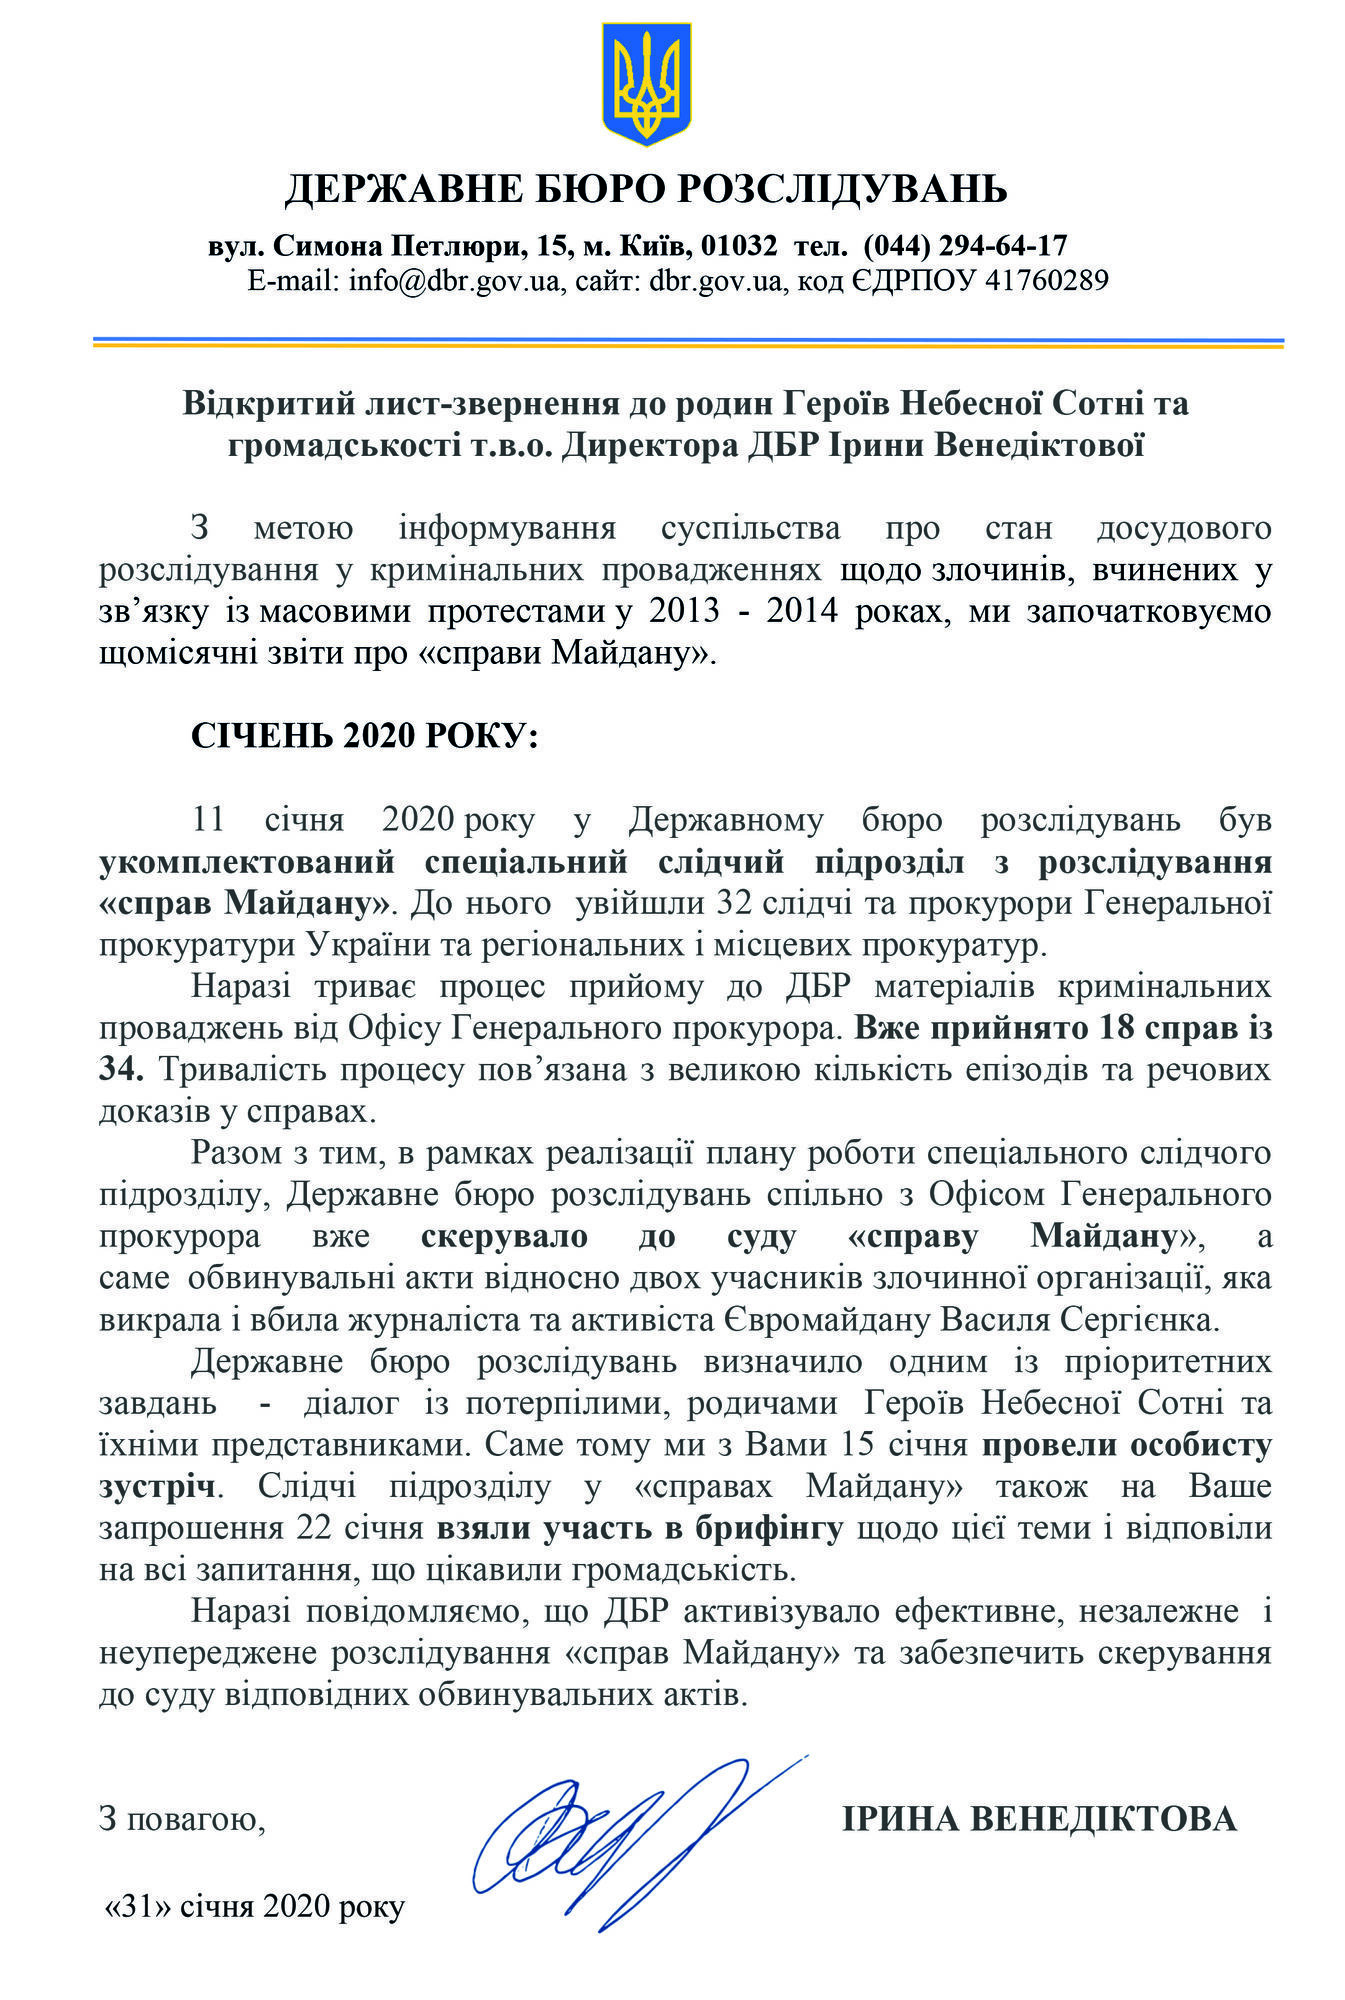 Звіт про розслідування ''справ Майдану'' за січень 2020 року